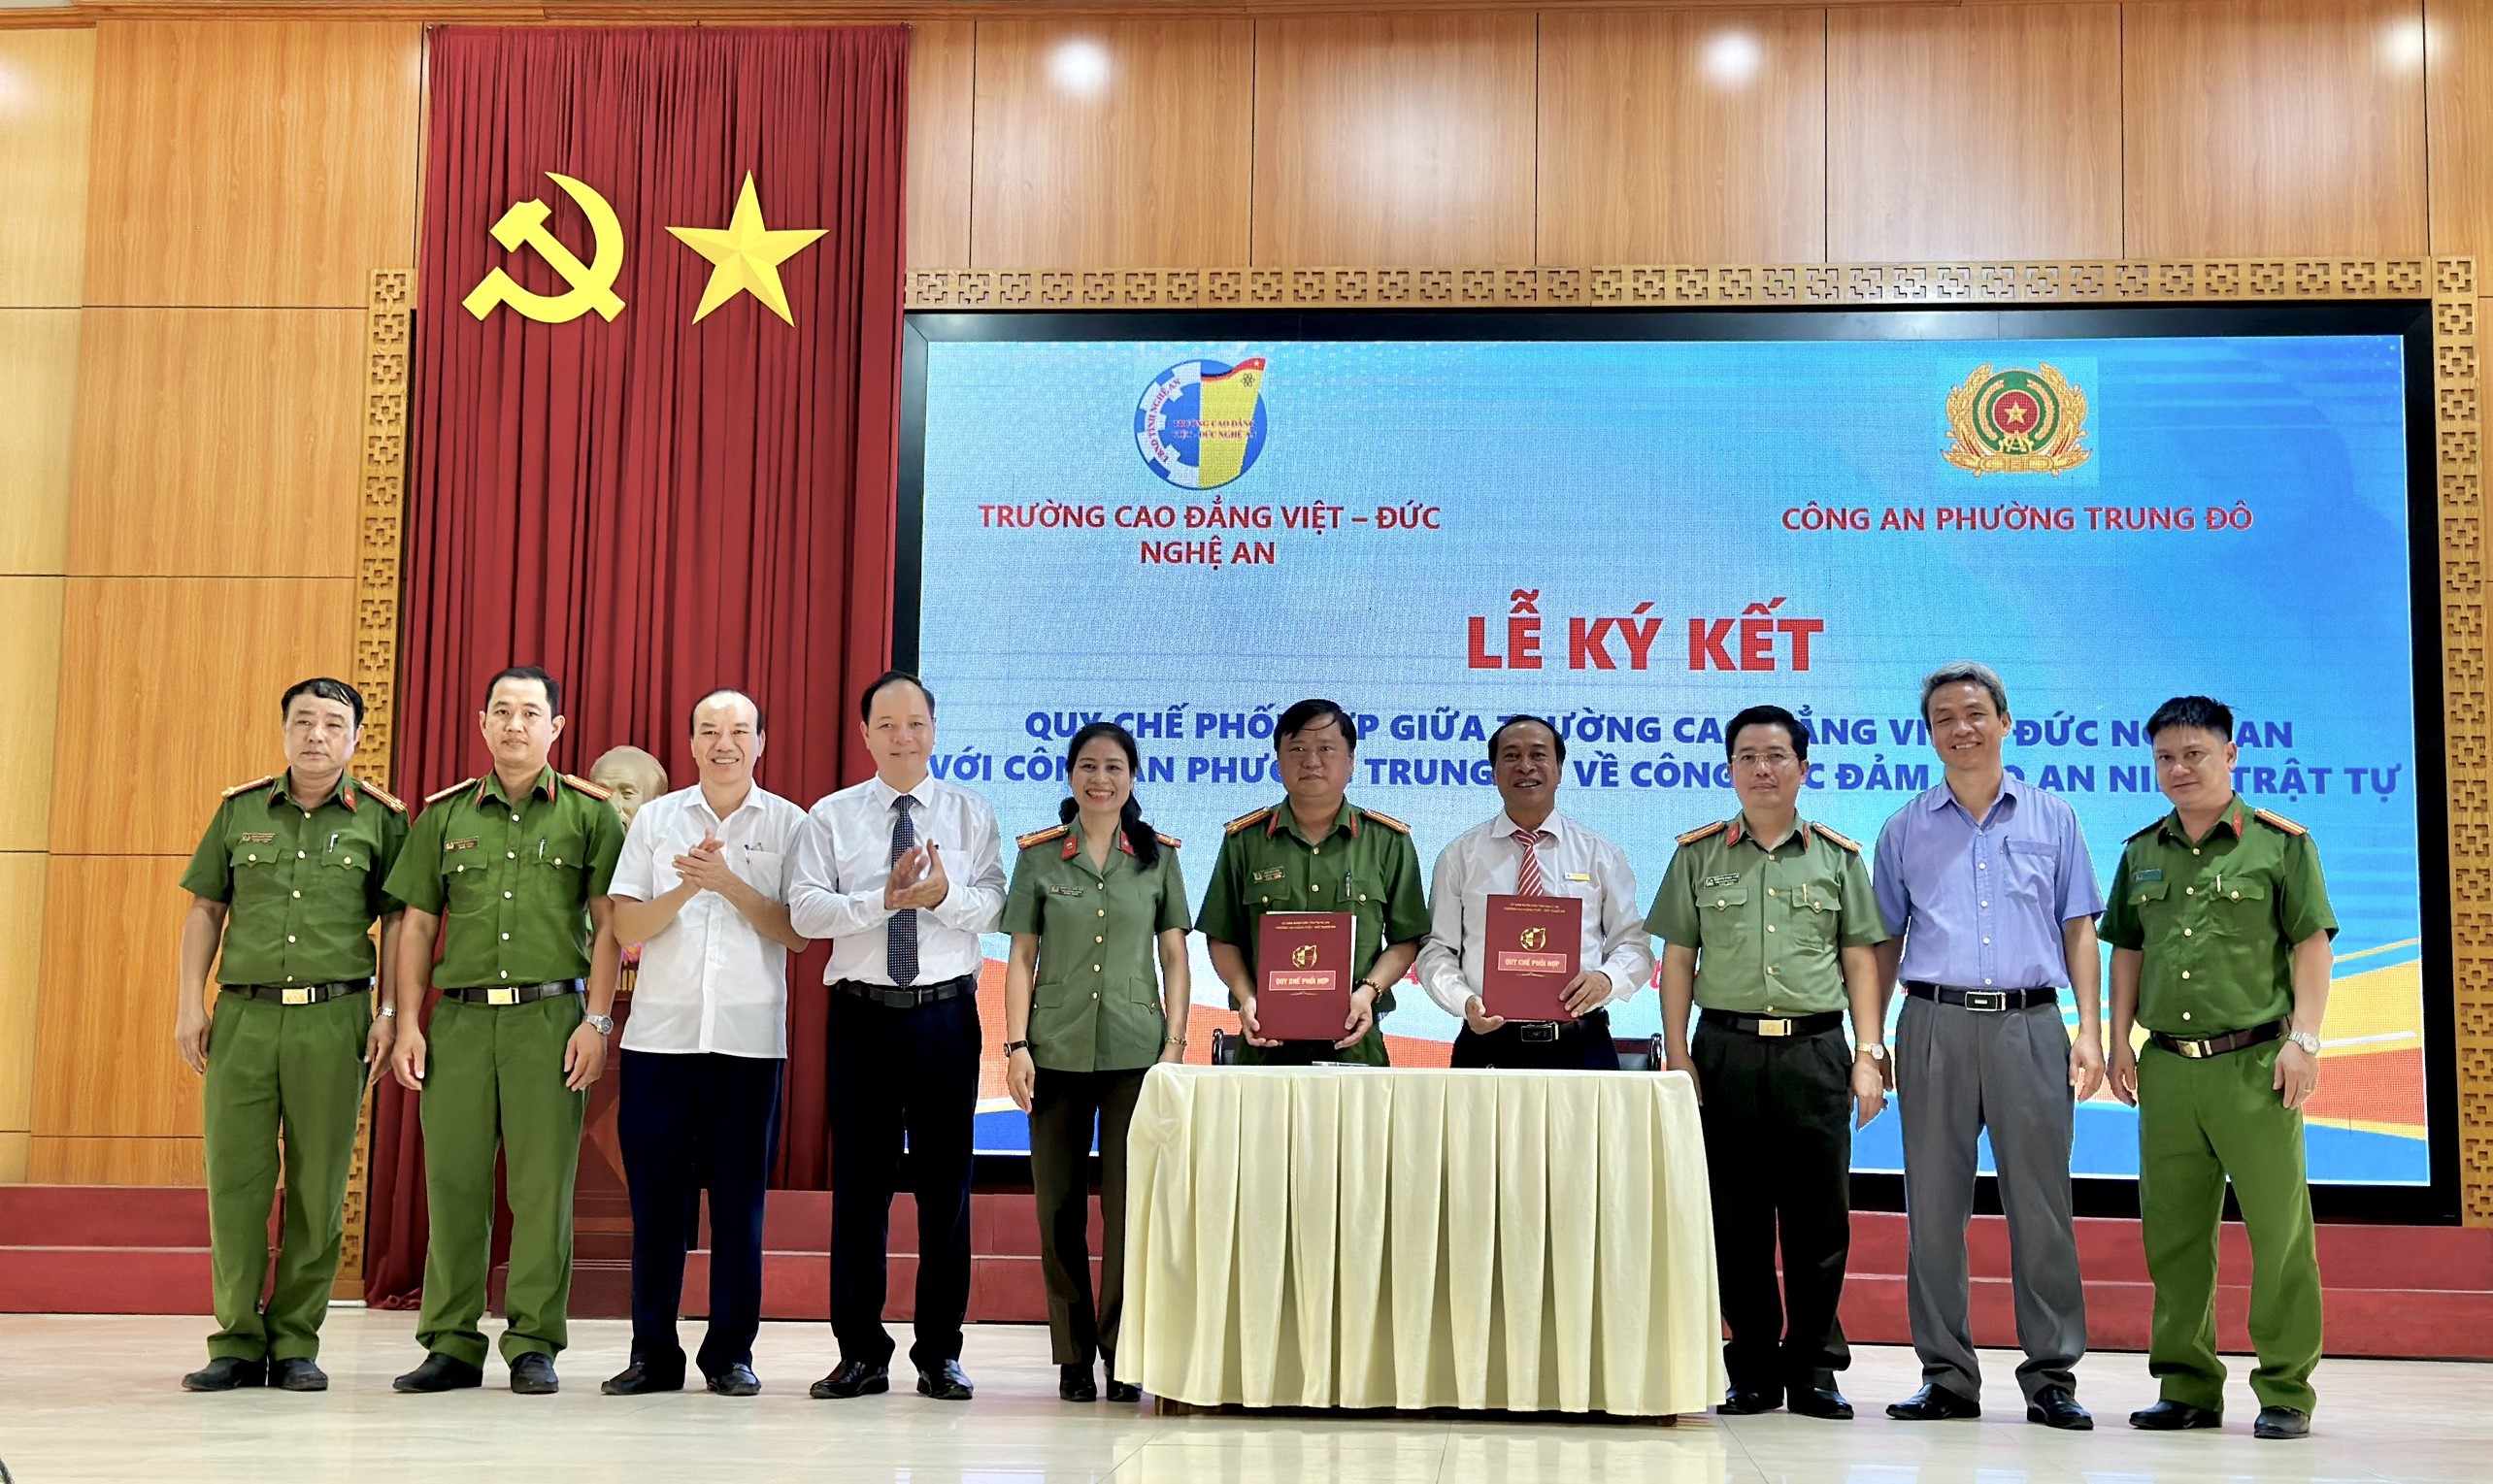 Lễ ra mắt Mô hình “Vì thương hiệu trường nghề, để ngày mai vững bước” tại Trường Cao đẳng Việt – Đức Nghệ An